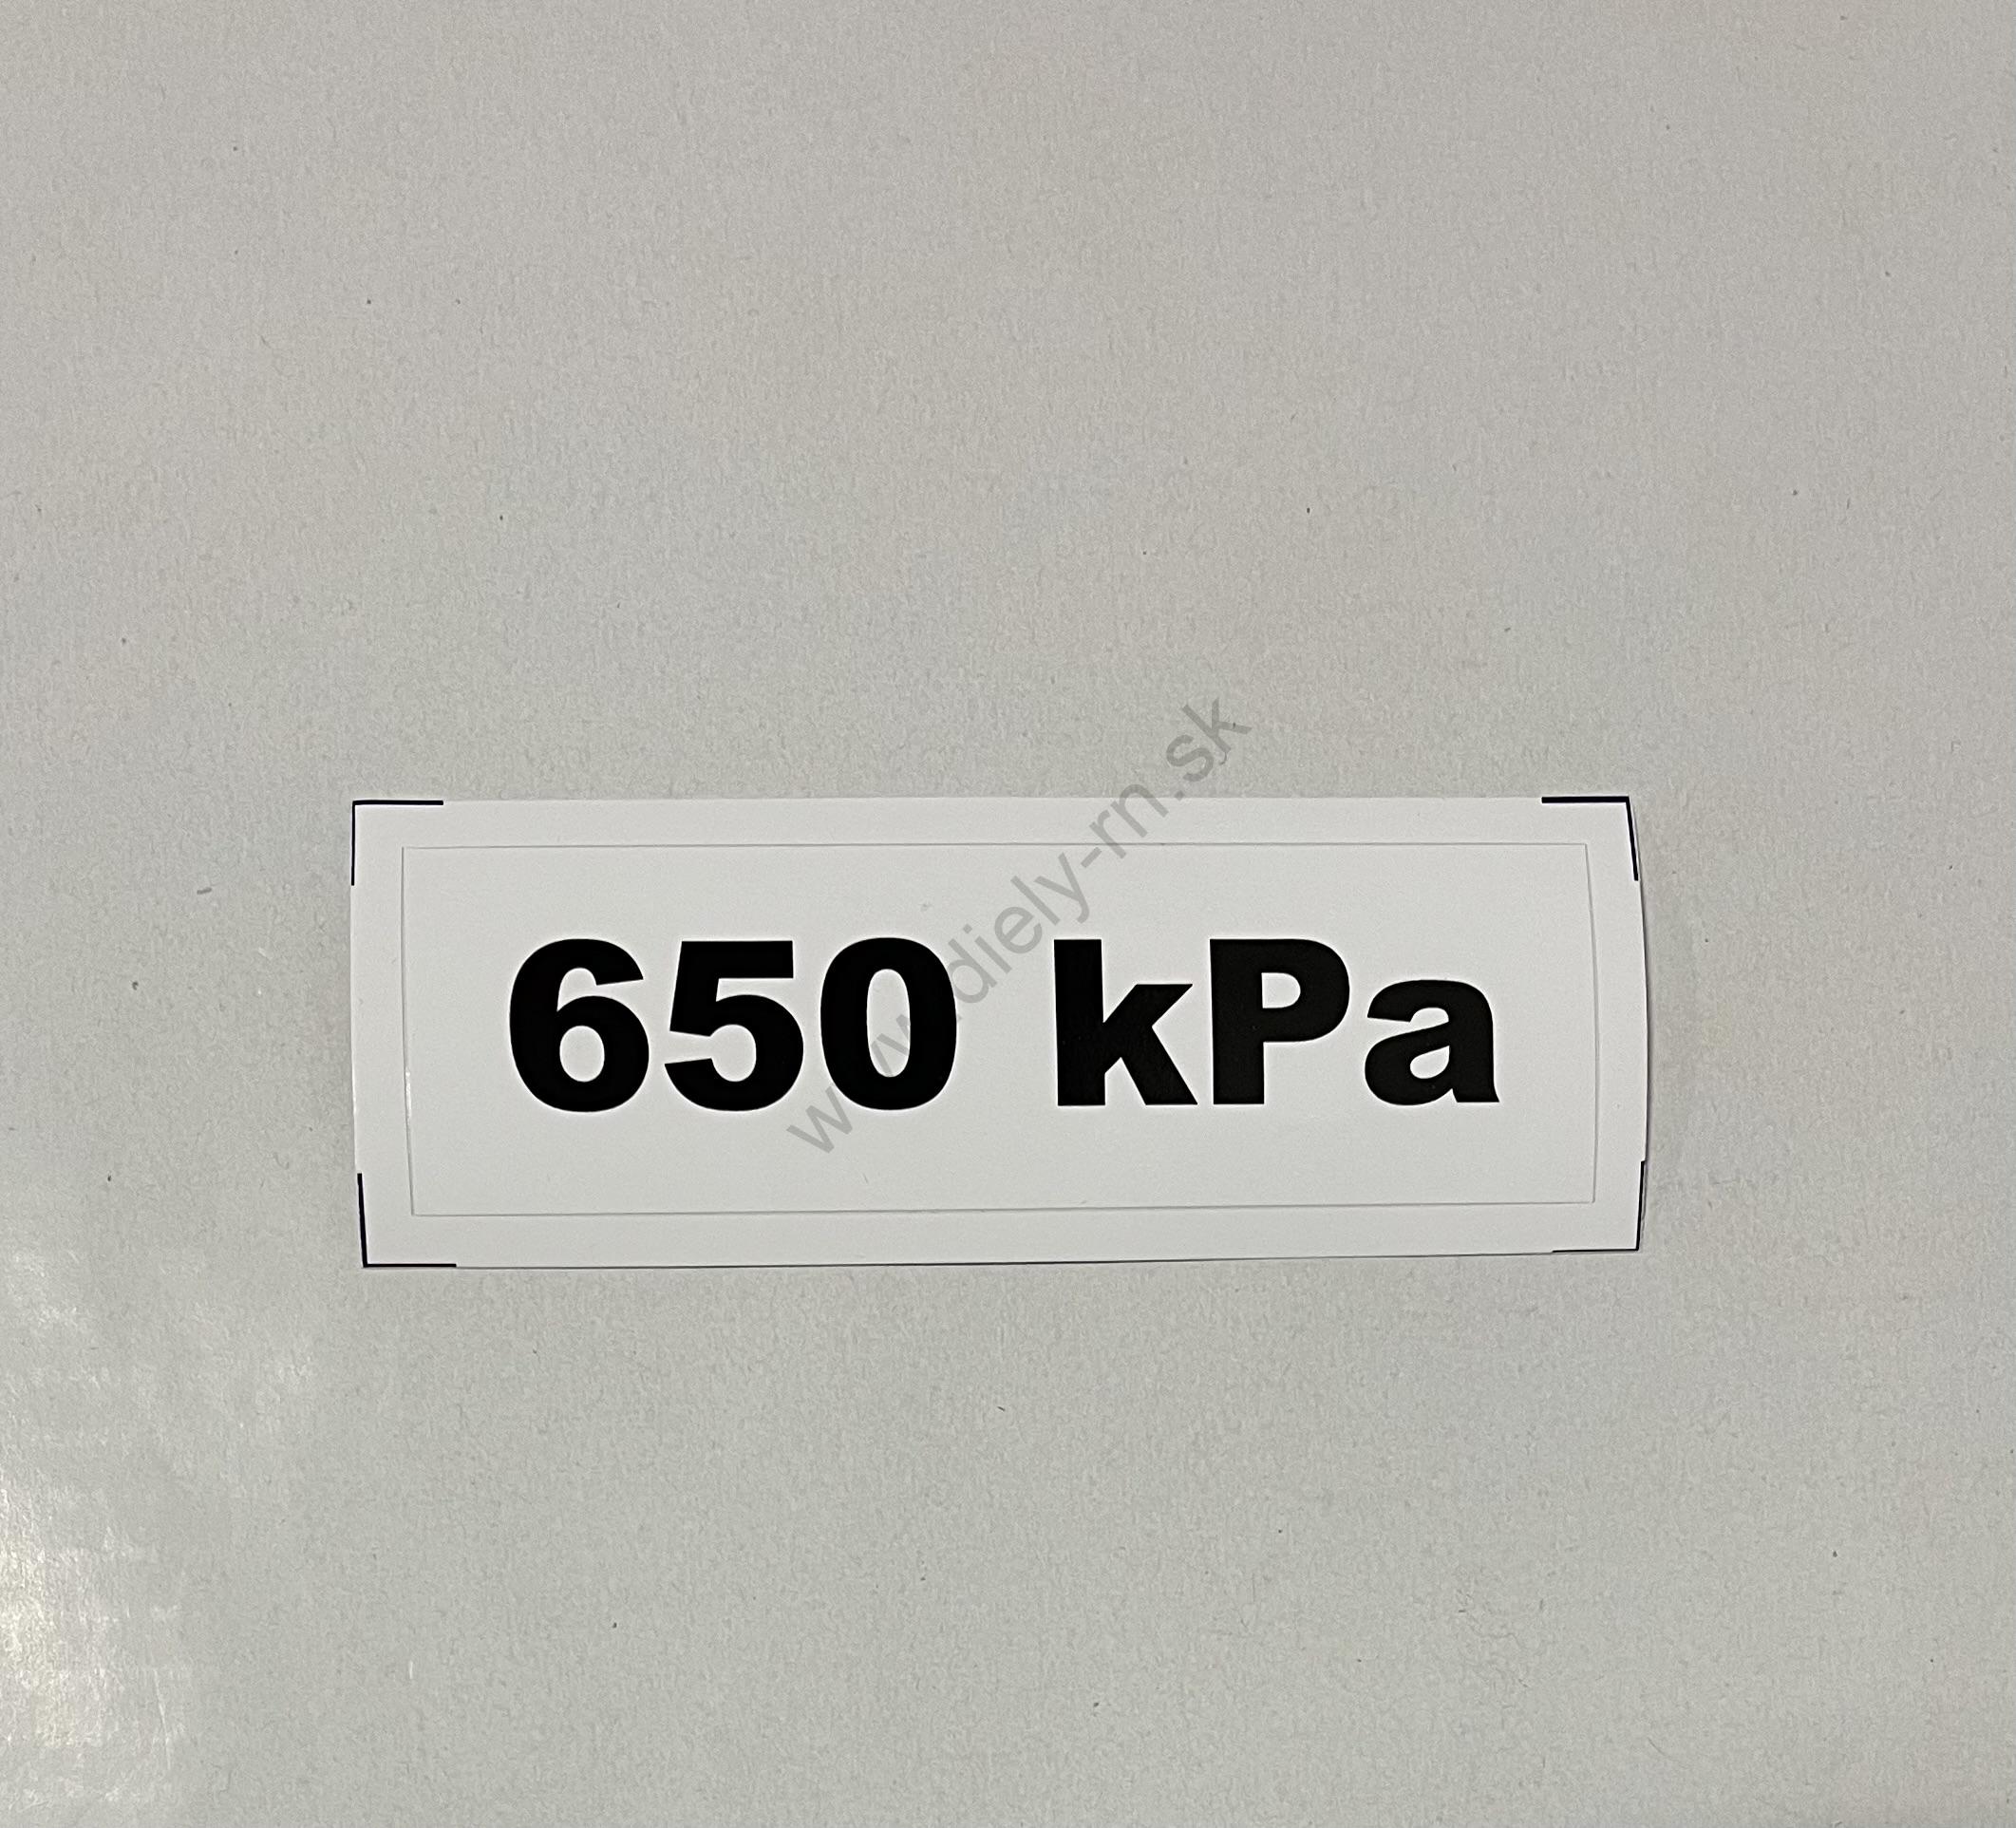 Označenie kPa 650